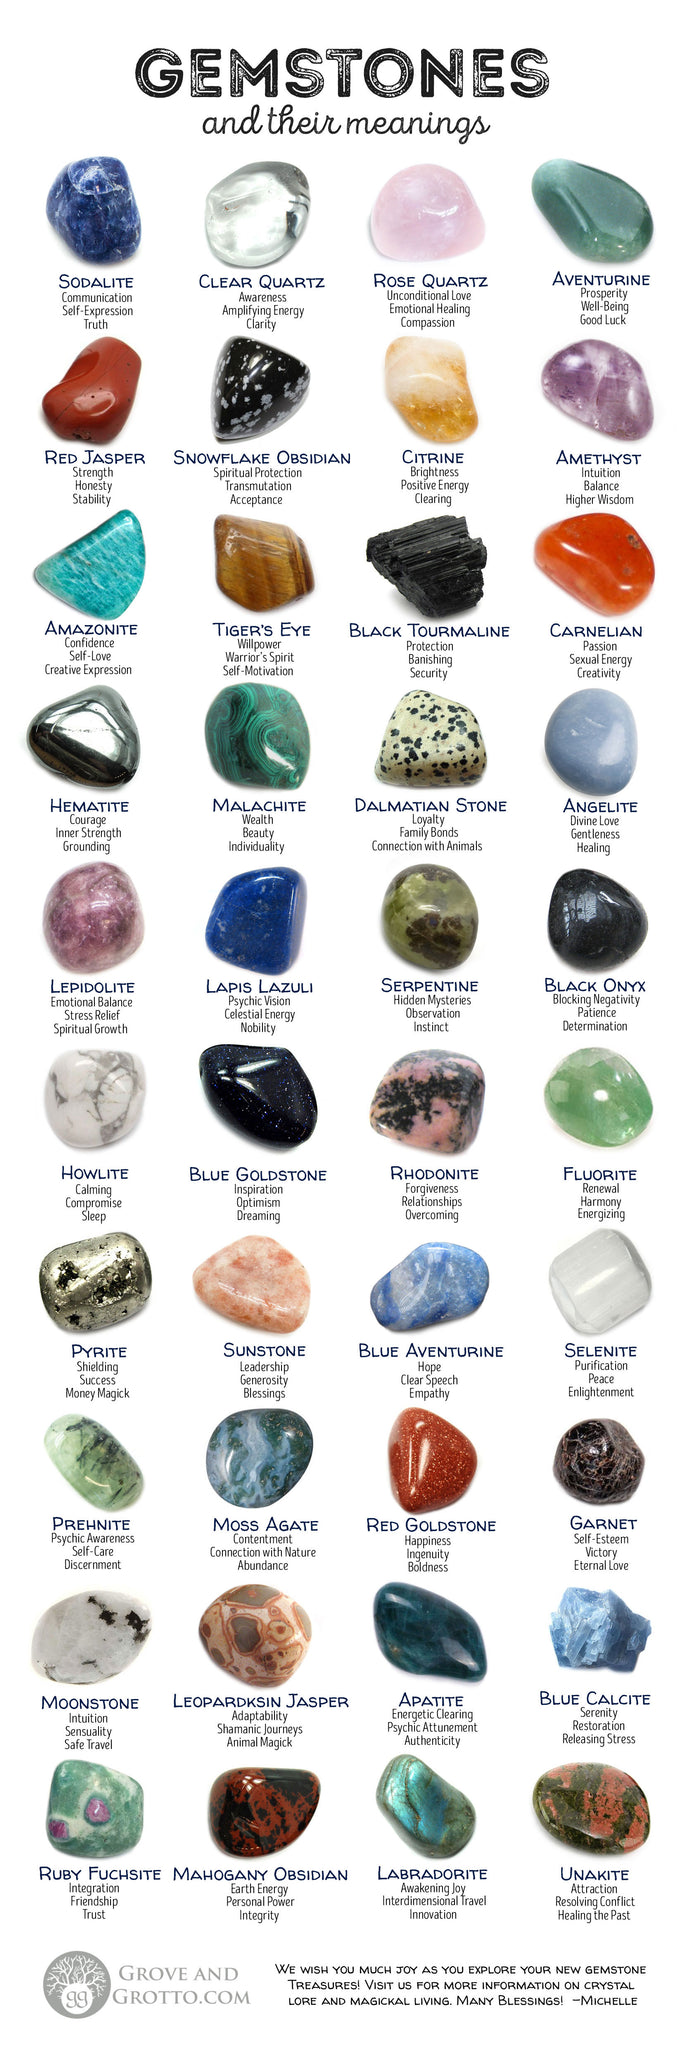 Gemstone & Crystal Healing Properties, Gemstone Meanings, Healing Crystals  Meanings, Metaphysical Properties of Crystals & Gemstones